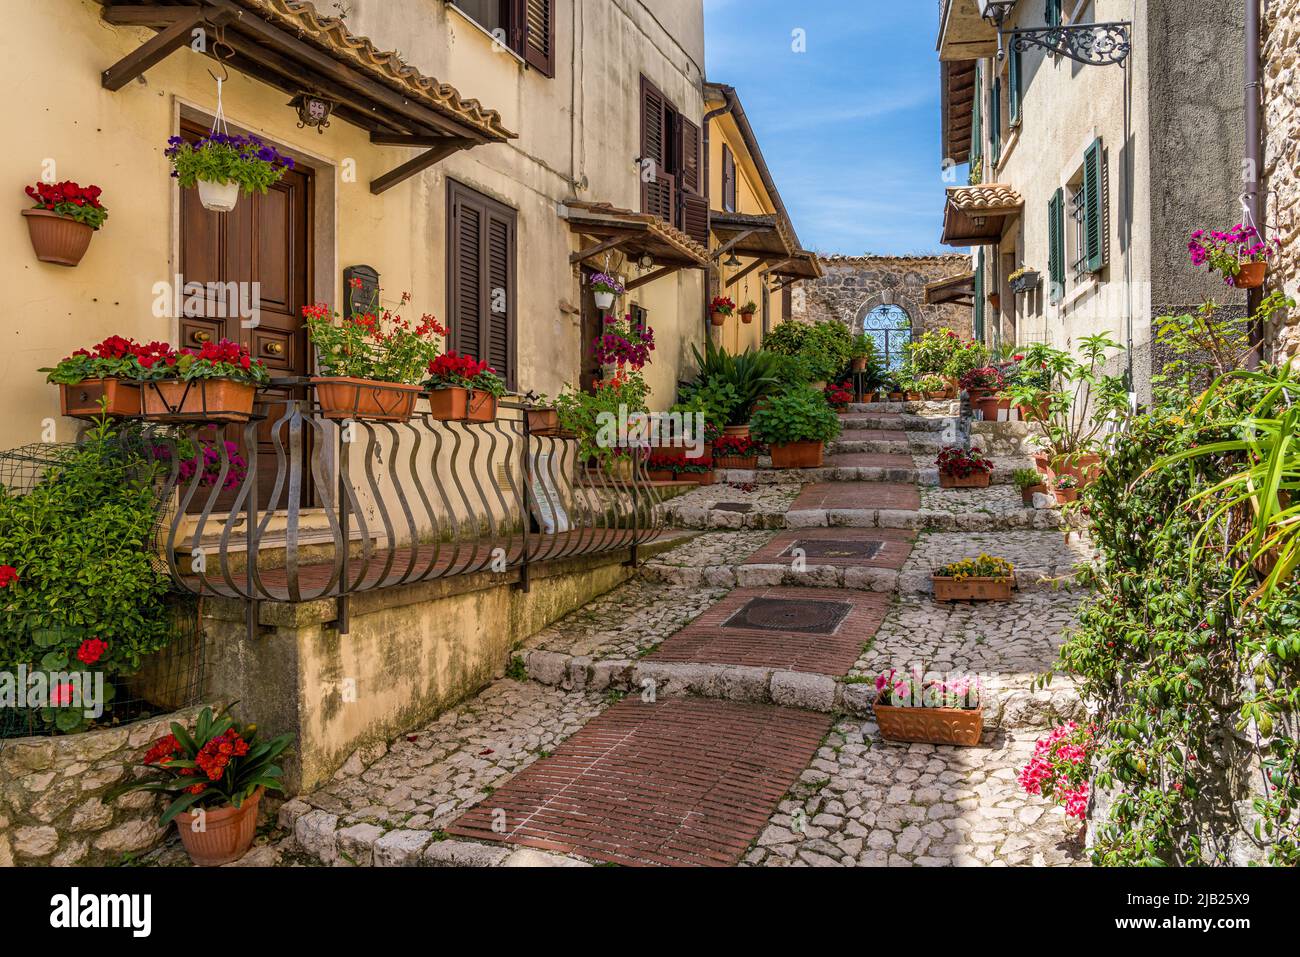 Il bellissimo borgo di Veroli, nei pressi di Frosinone, Lazio, Italia centrale. Foto Stock